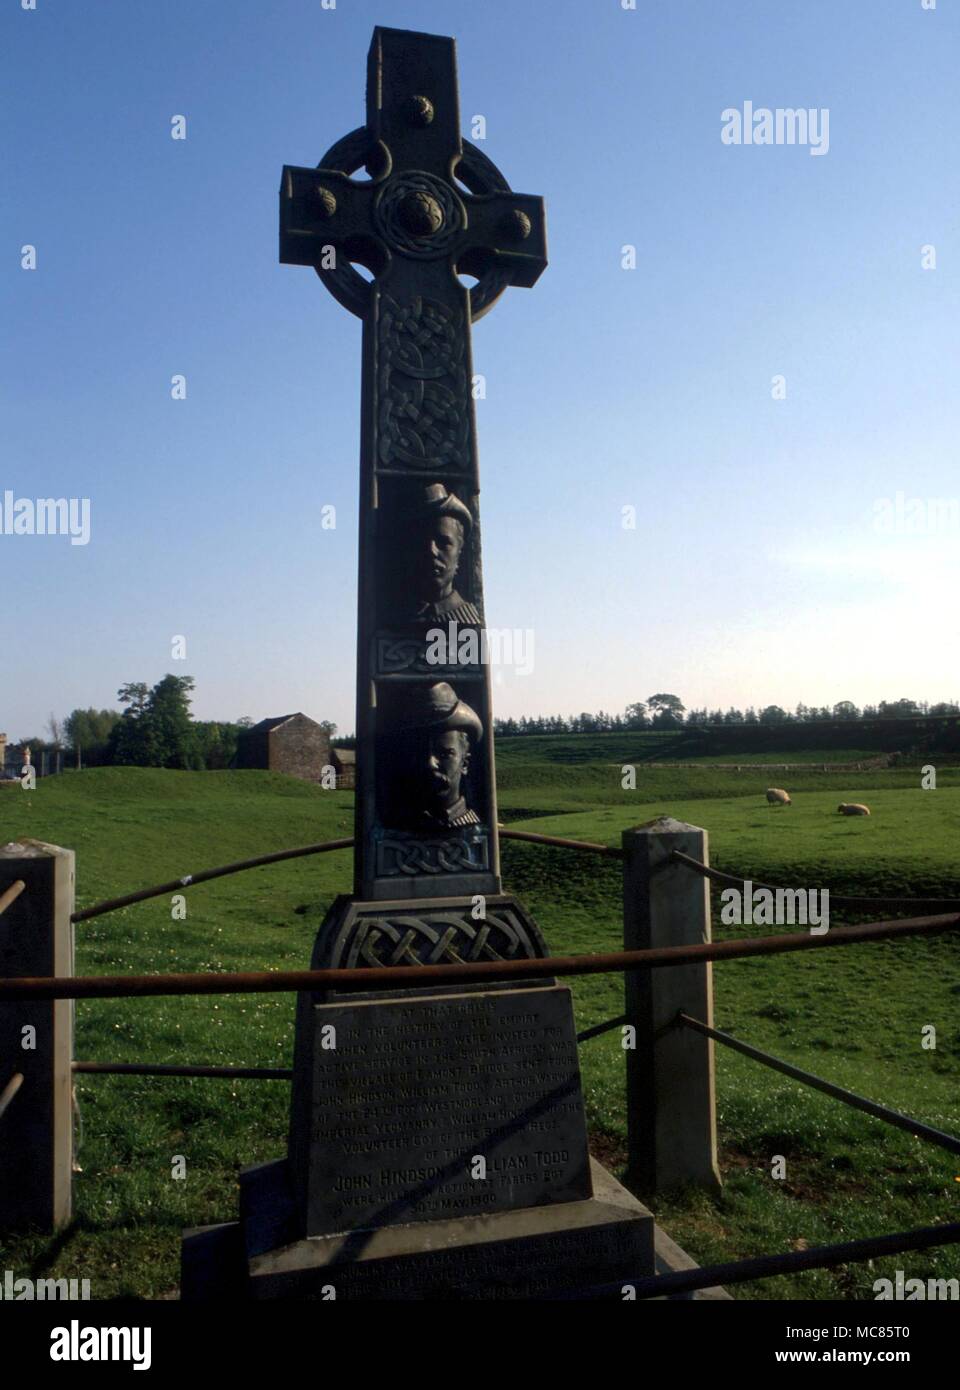 Christlichen Mythos - Eamont Bridge (Denkmal) Kreuz Denkmal für die lokale Männer im Burenkrieg getötet, mit erhöhten Gesichtsbehandlung Bildnisse. Nördlich der prähistorischen graben System als 'Arthur's Round Table" Stockfoto